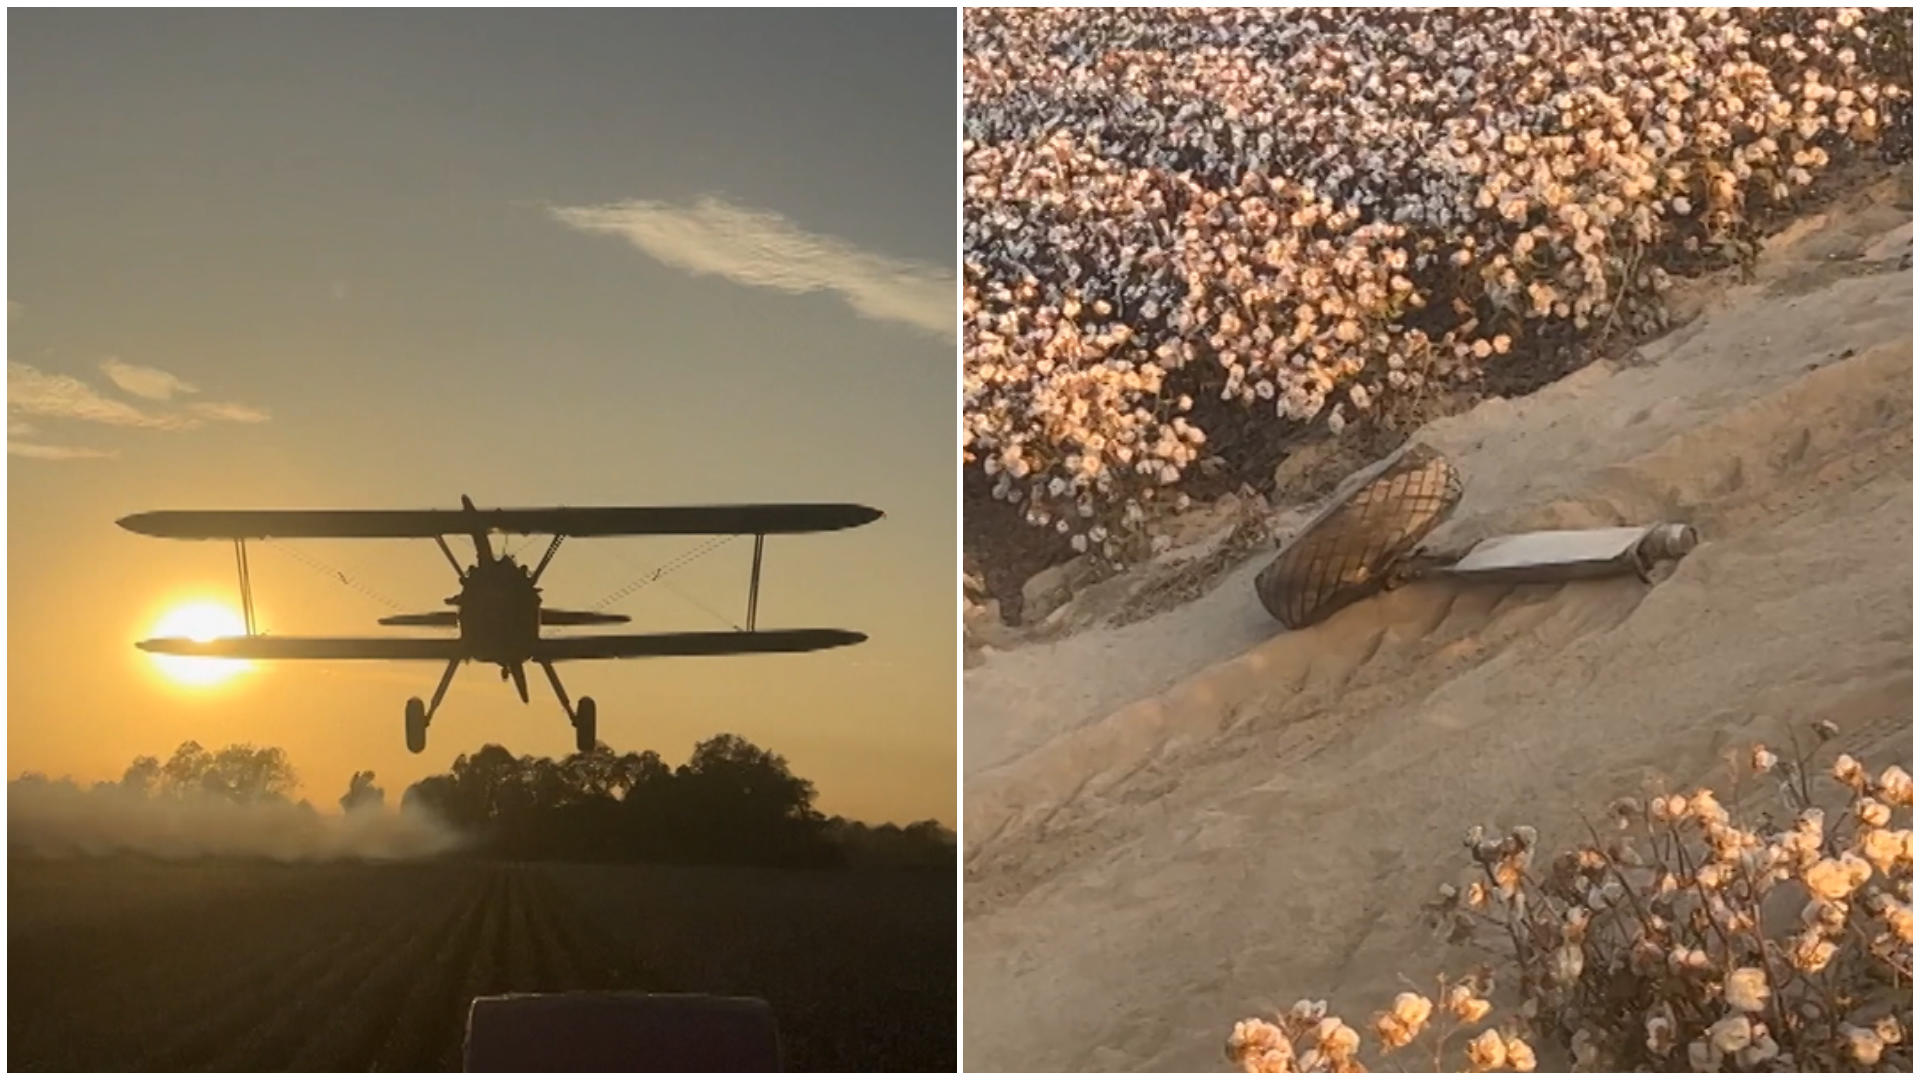 Flieger bleibt an Erntemaschine hängen - Fahrwerk bricht ab! Zu tief geflogen